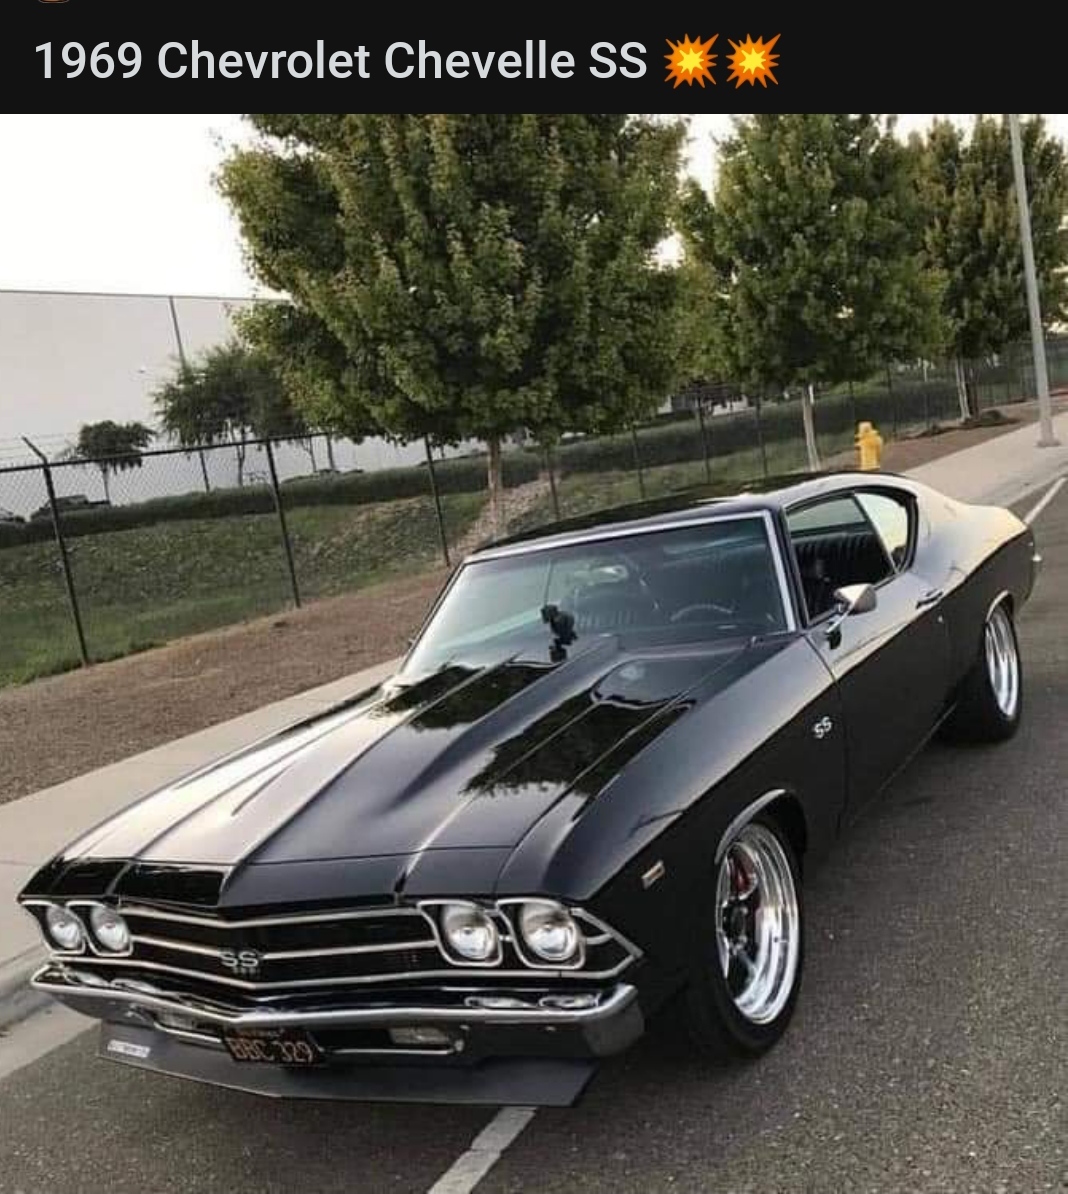 Сс автомобиль. Chevrolet Chevelle 1969. Chevy Chevelle SS 1969. Шевроле Шевель 1969. Chevrolet Chevelle SS.